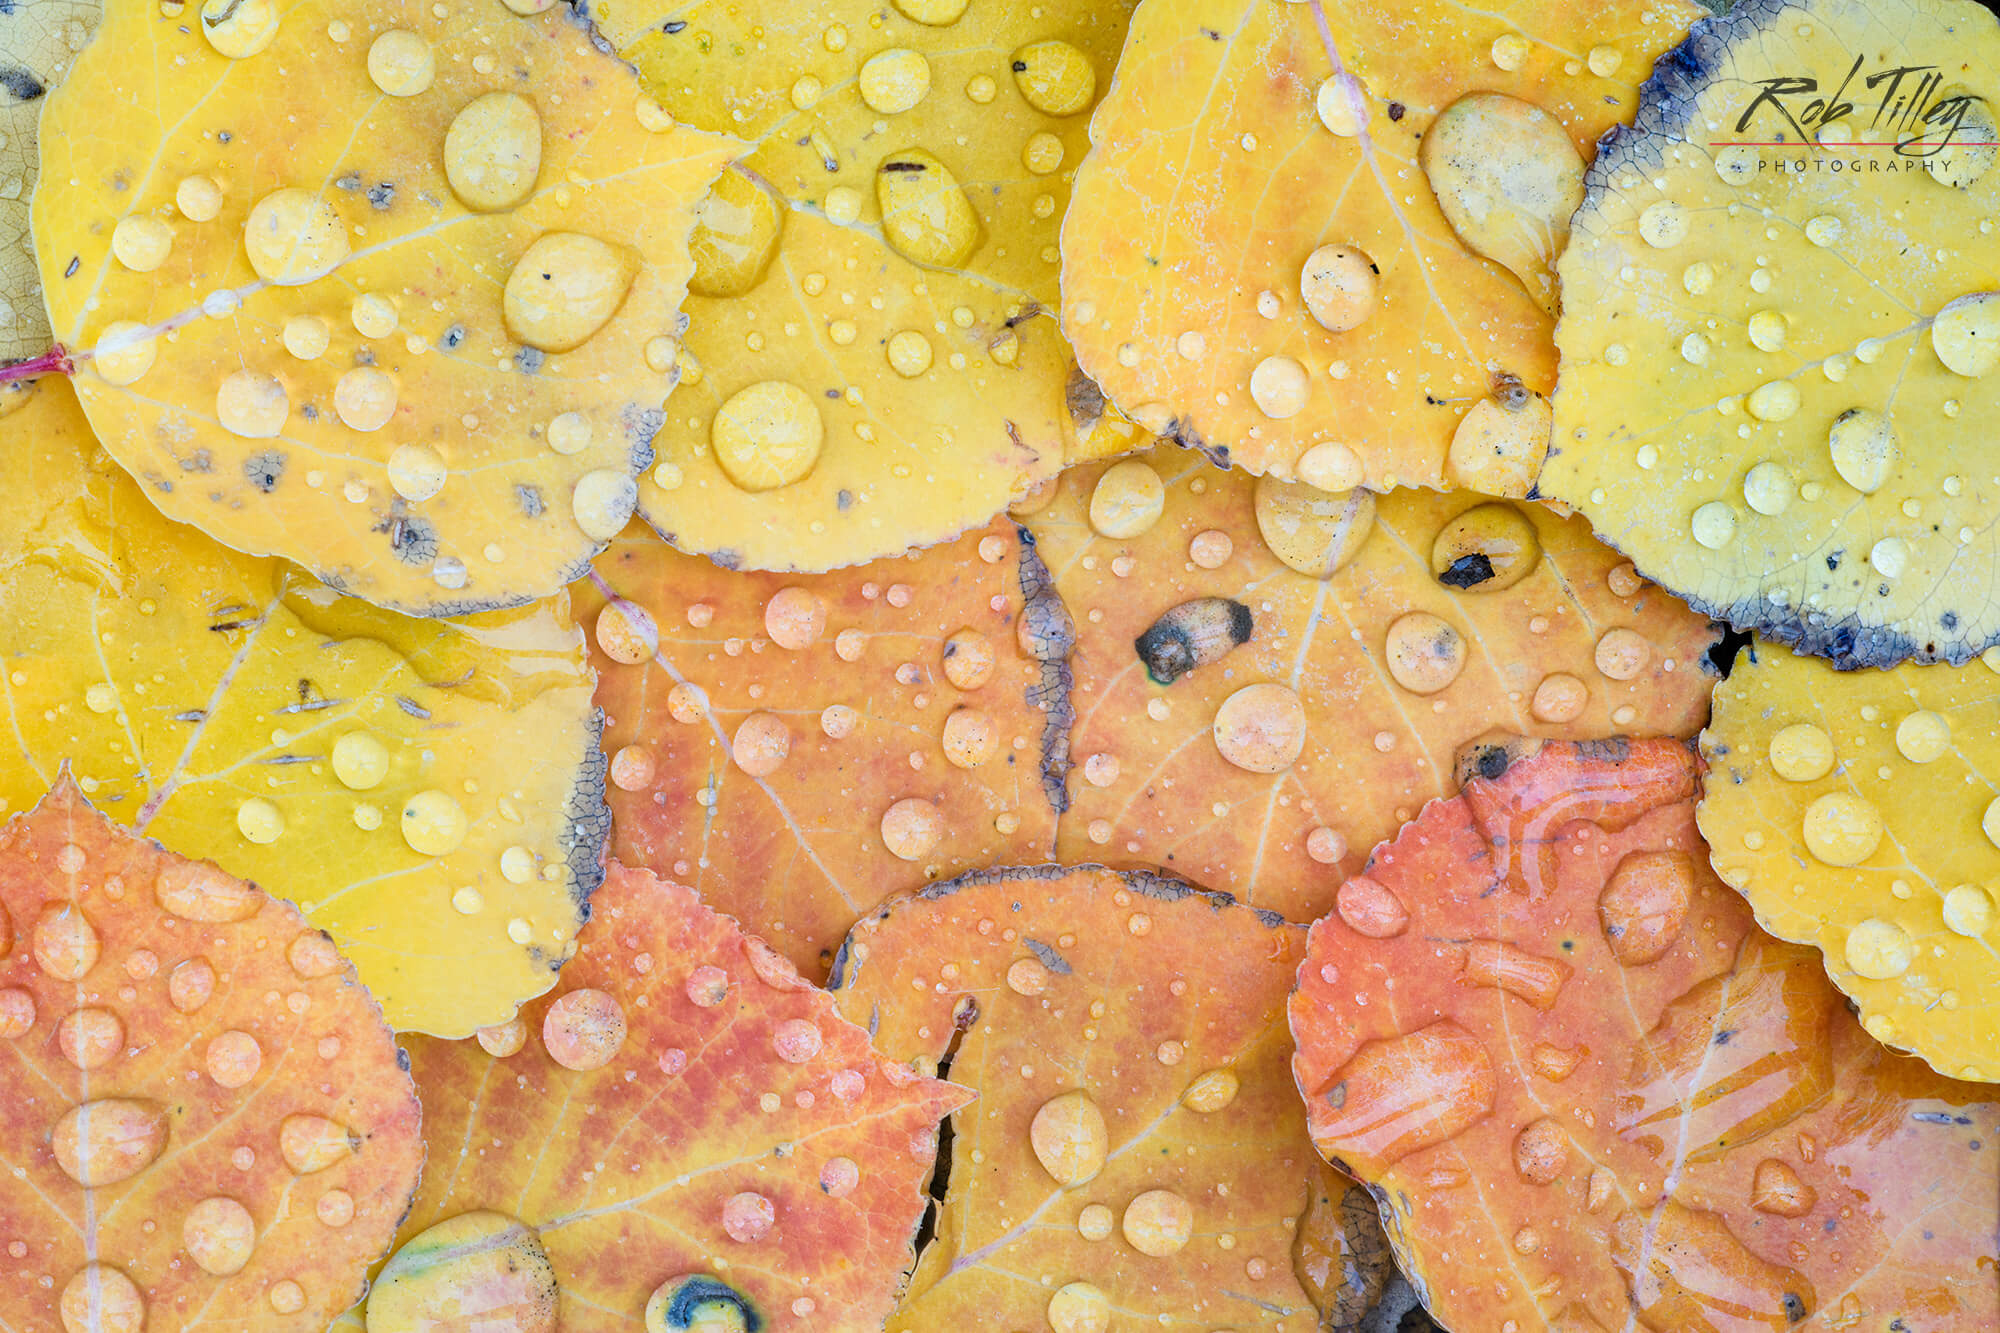 Water Drops on Aspen Leaves